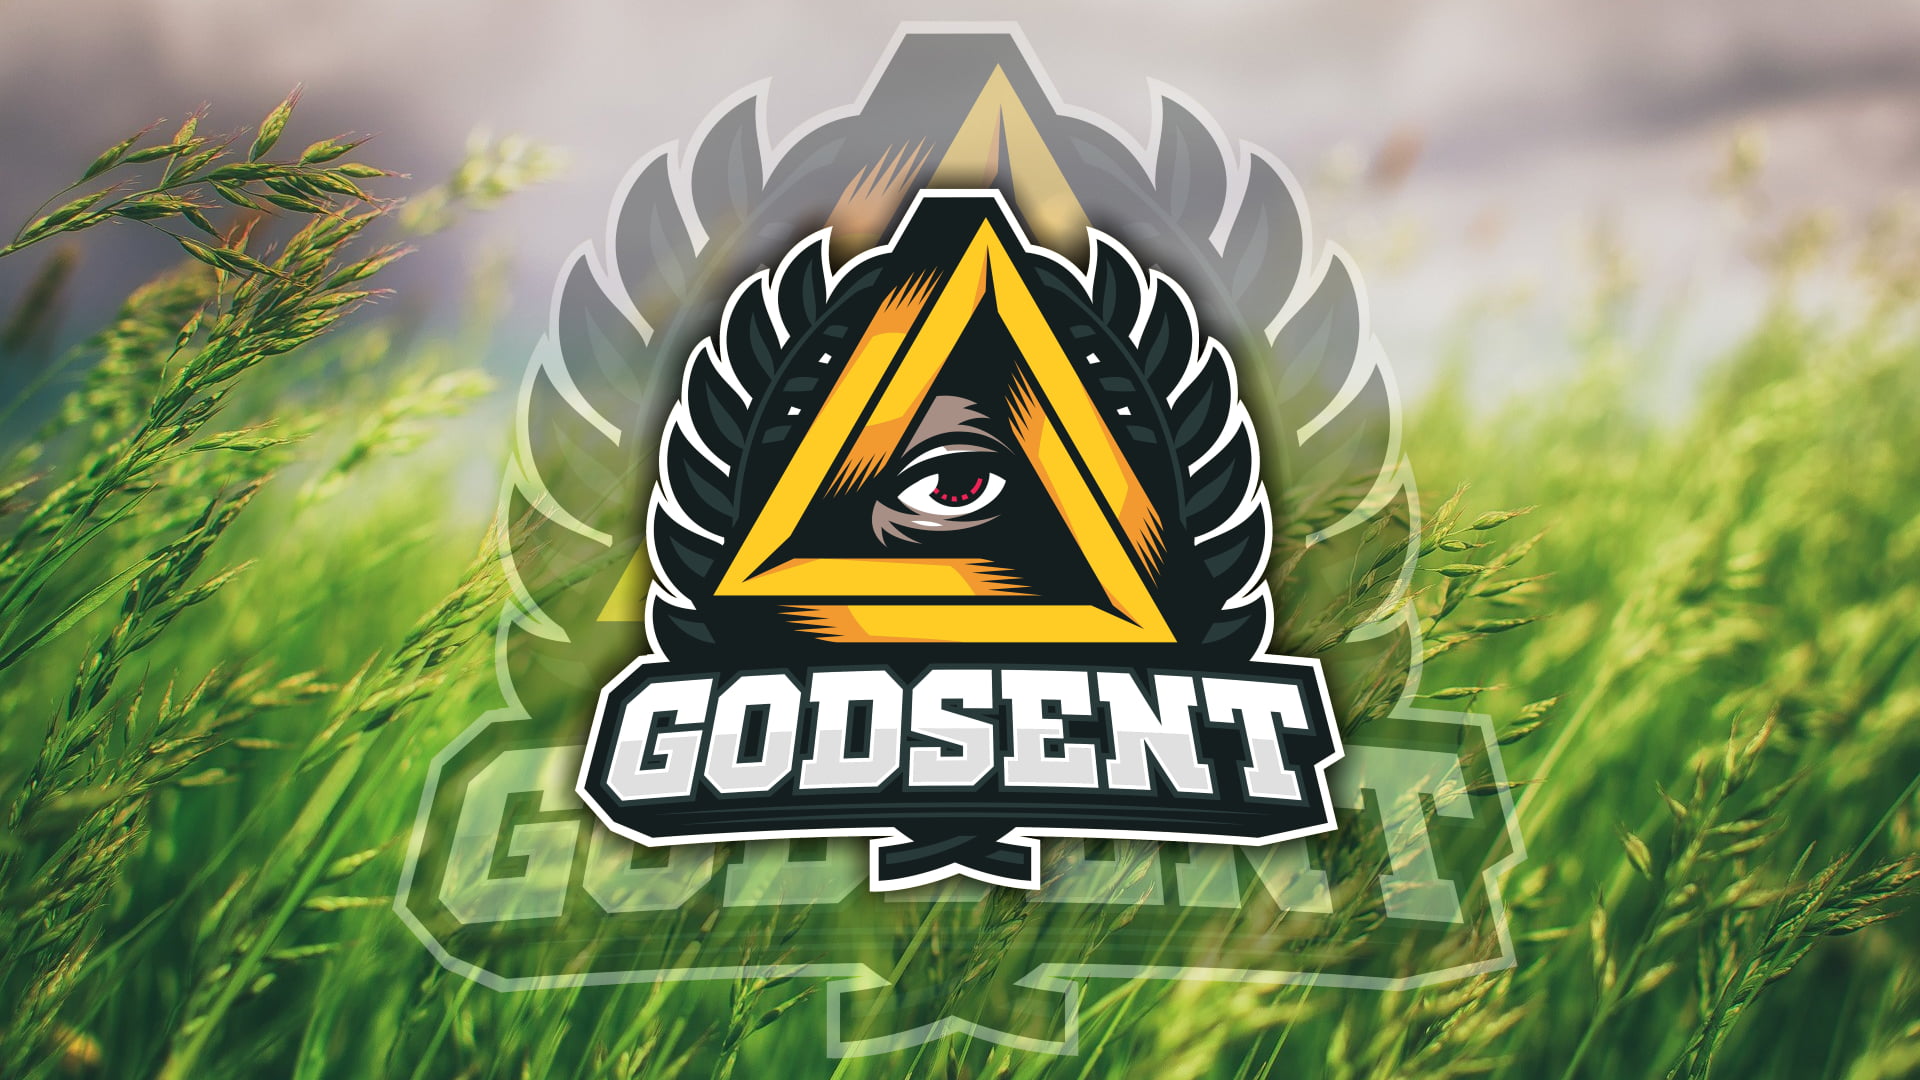 Godsent Cs Go - HD Wallpaper 